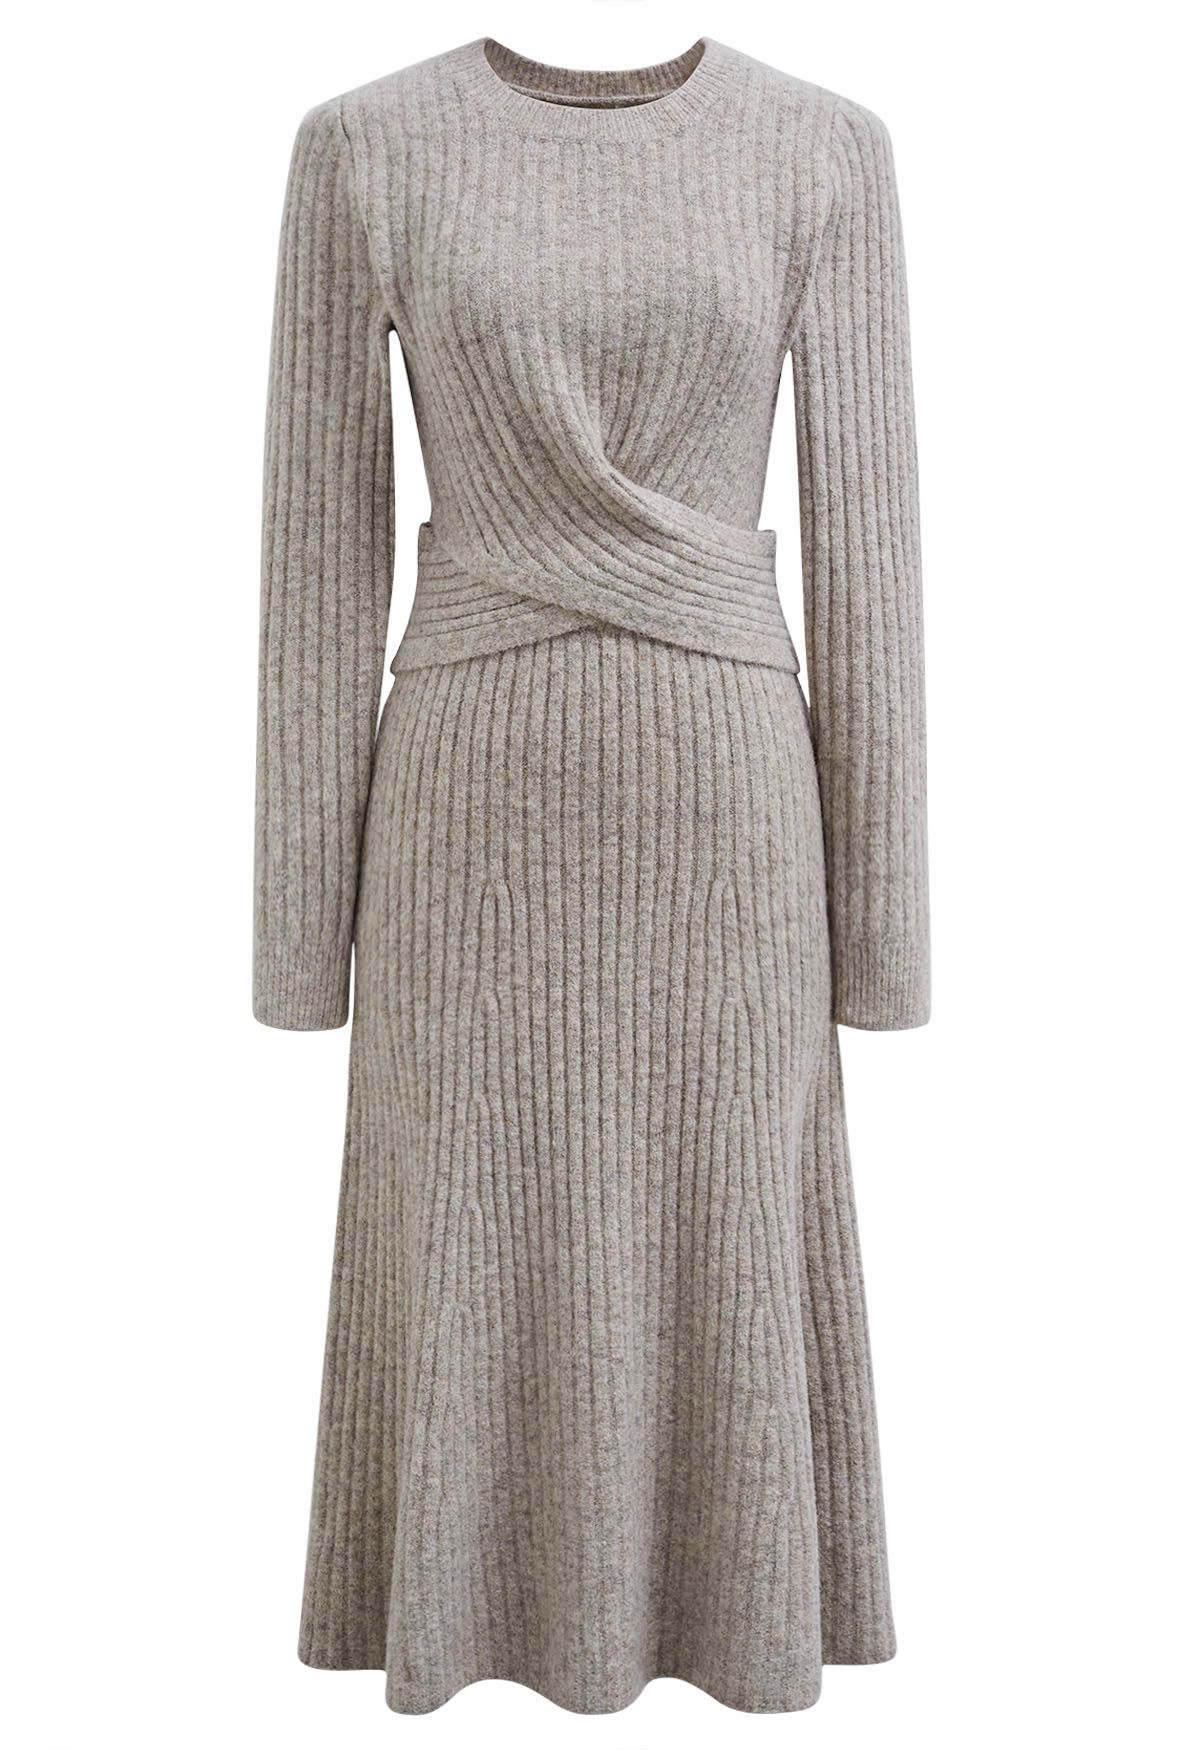 Cross Waist Wool-Blend Top and Skirt Set in Oatmeal